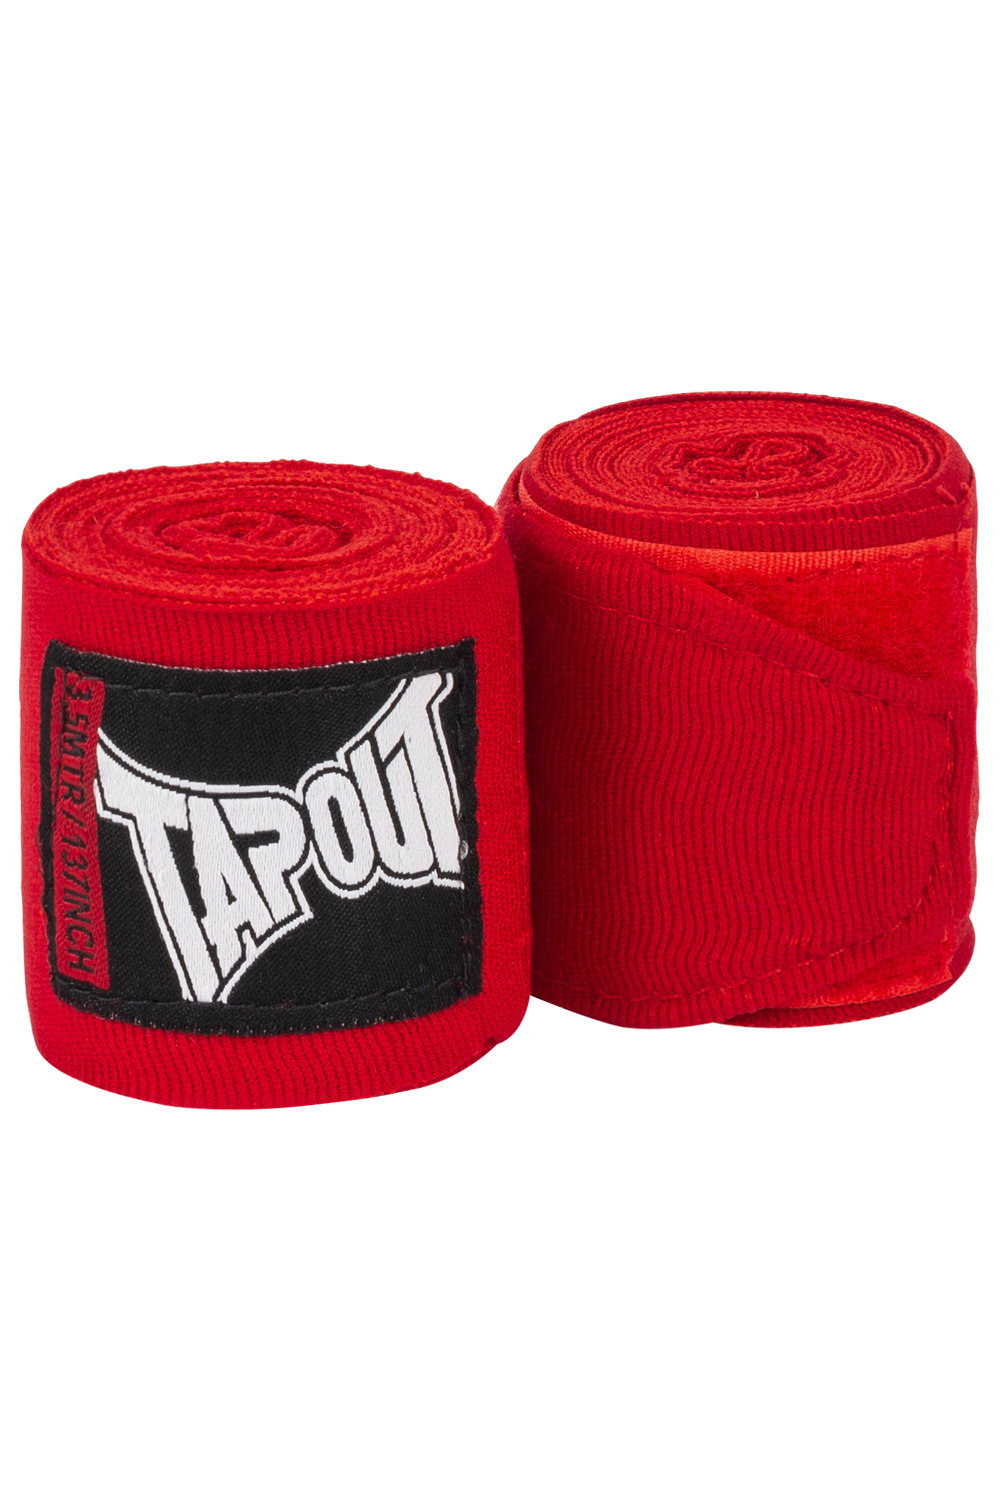 Tapout Handwraps (1 Pair)